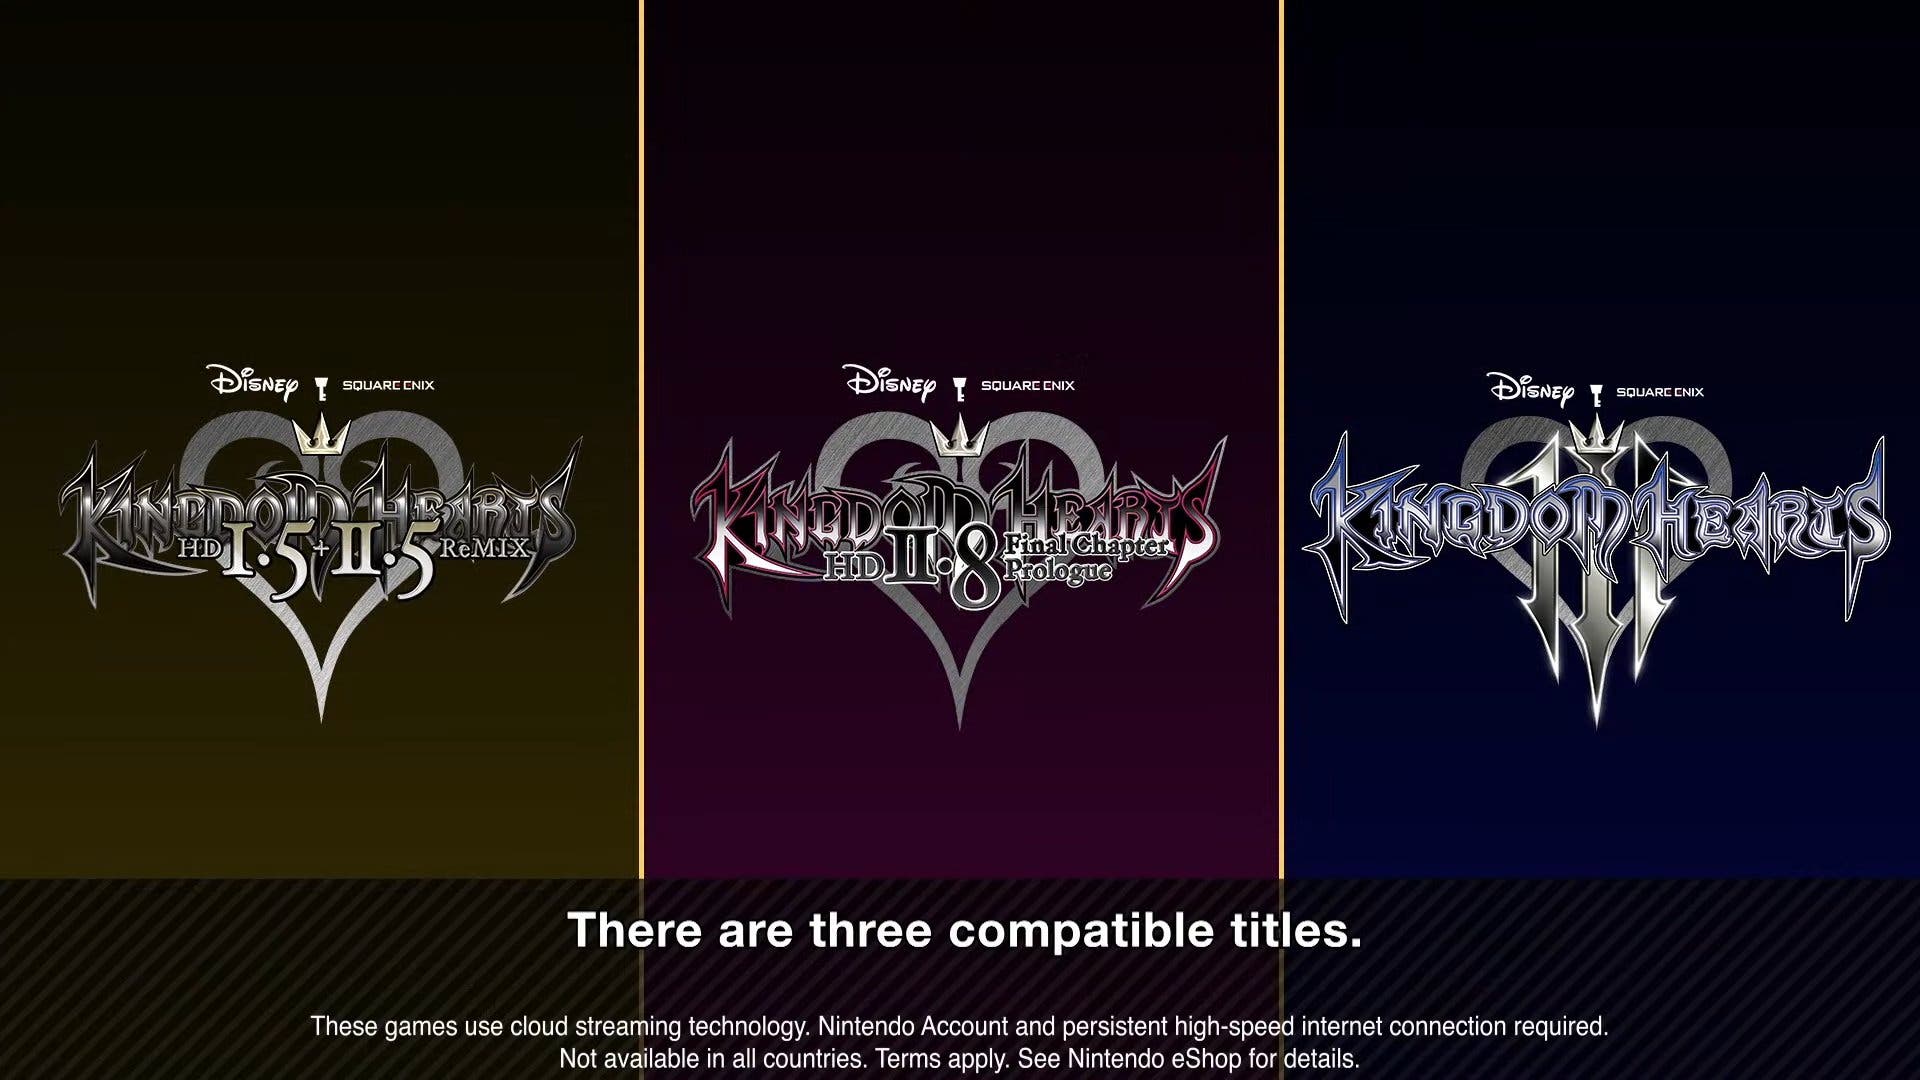 Kingdom Hearts HD 2.8, ¿por qué es exclusivo de PS4?